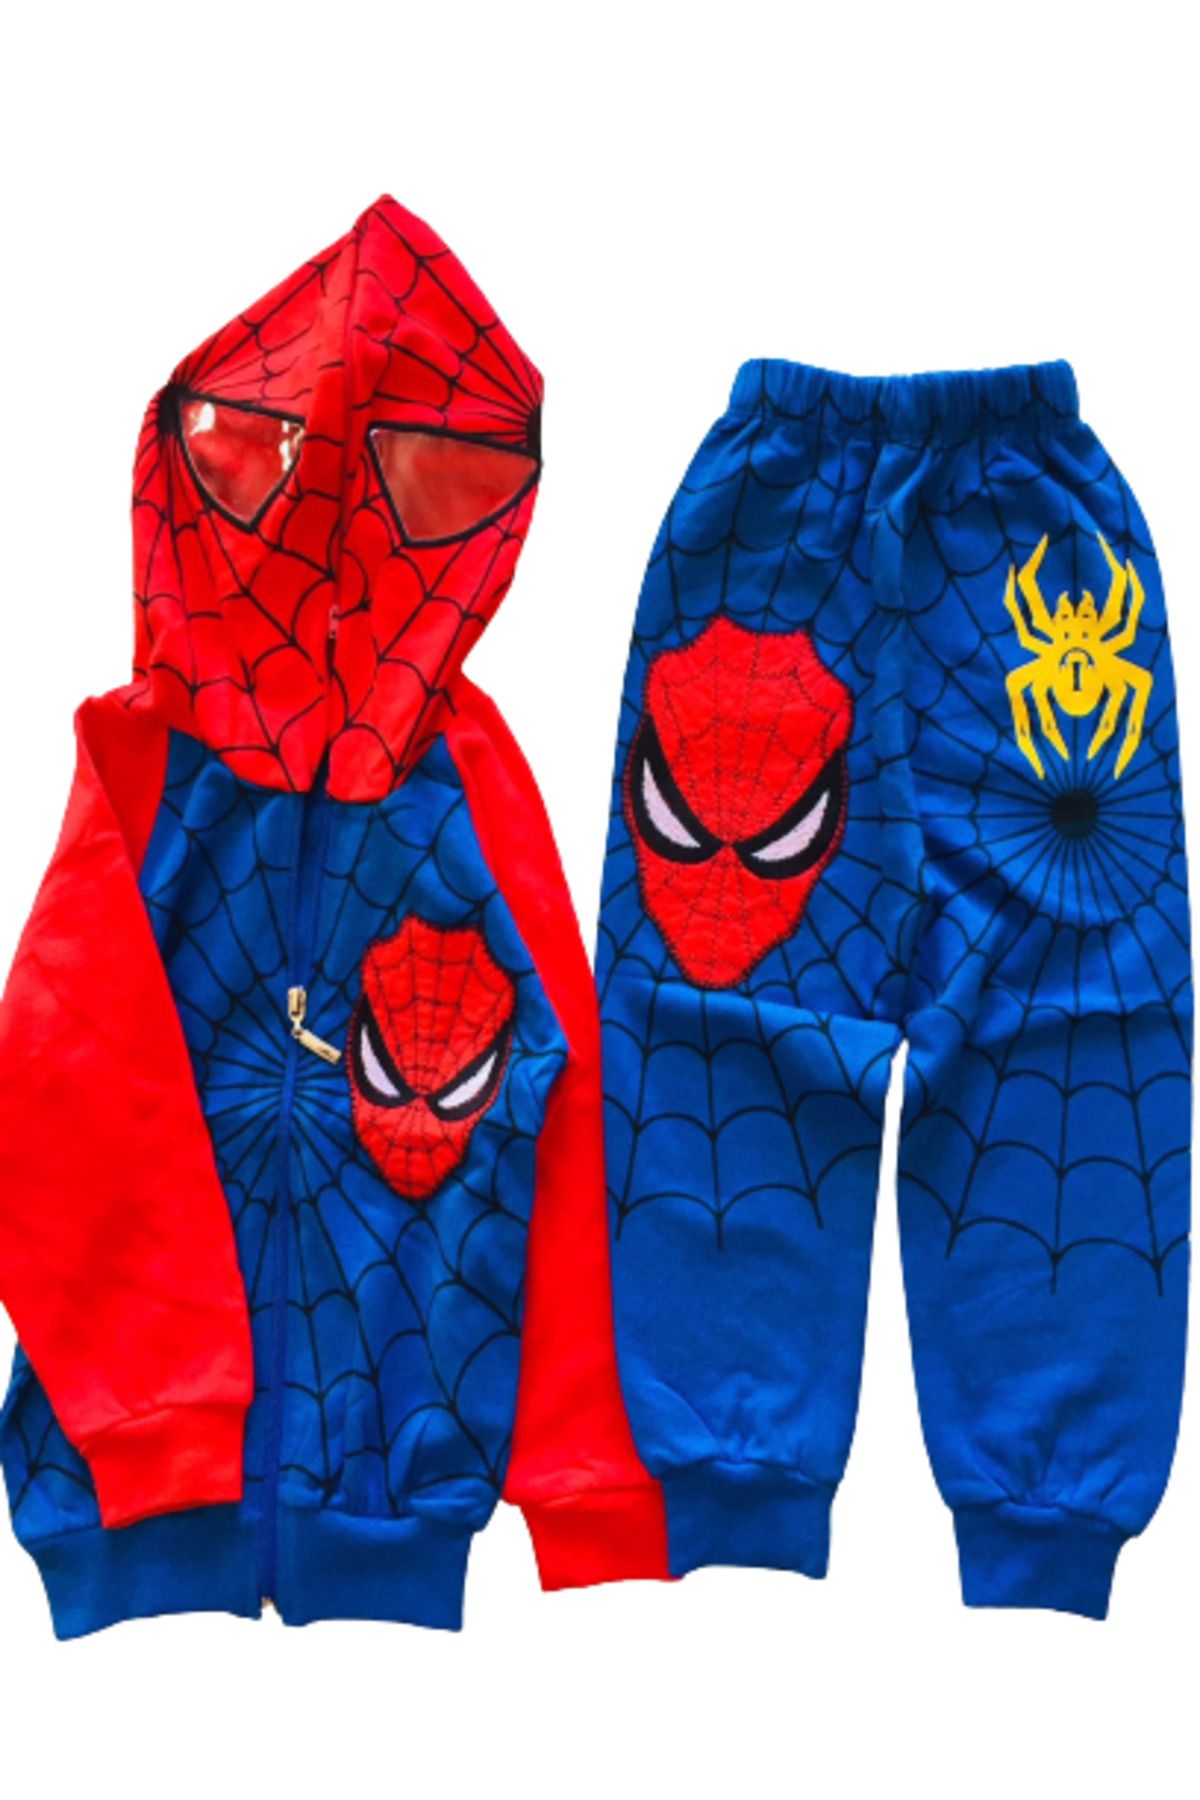 Deejo Örümcek Adam Eşofman Takımı Spiderman Kostümü Maskeli Kapüşonlu